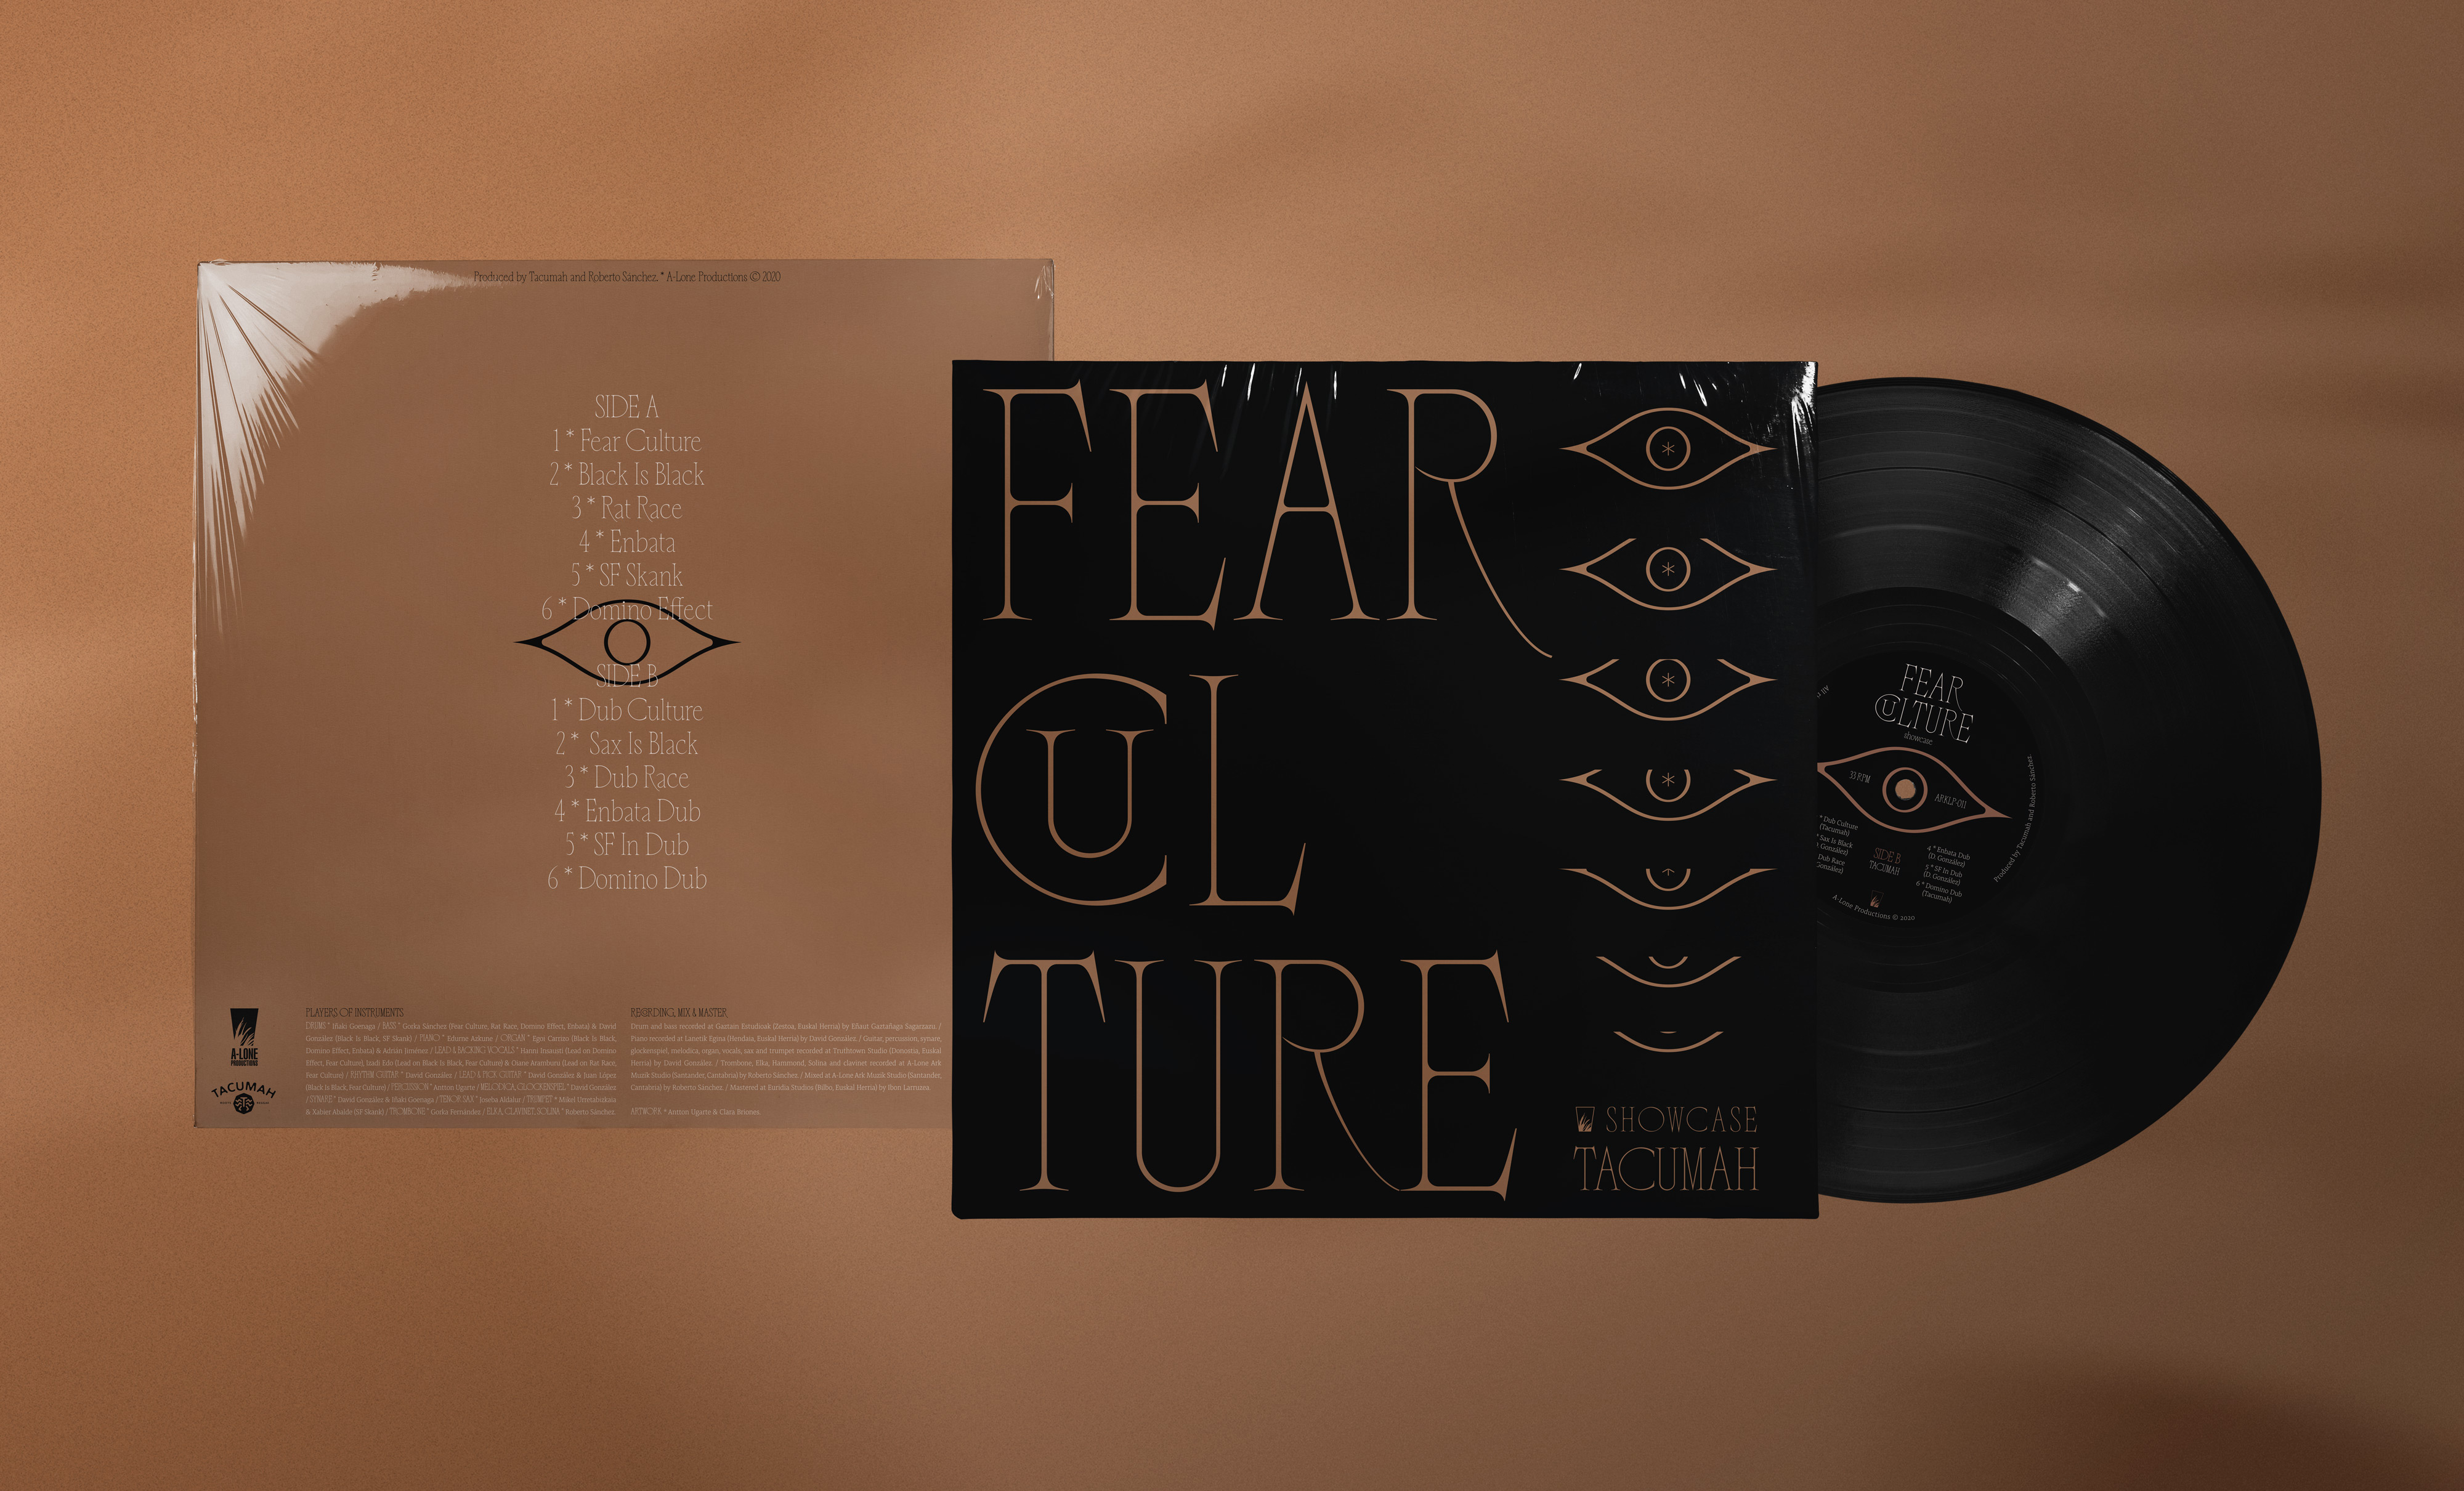 Tacumah LP - Fear Culture by Clara Briones - Antton Ugarte - Creative Work